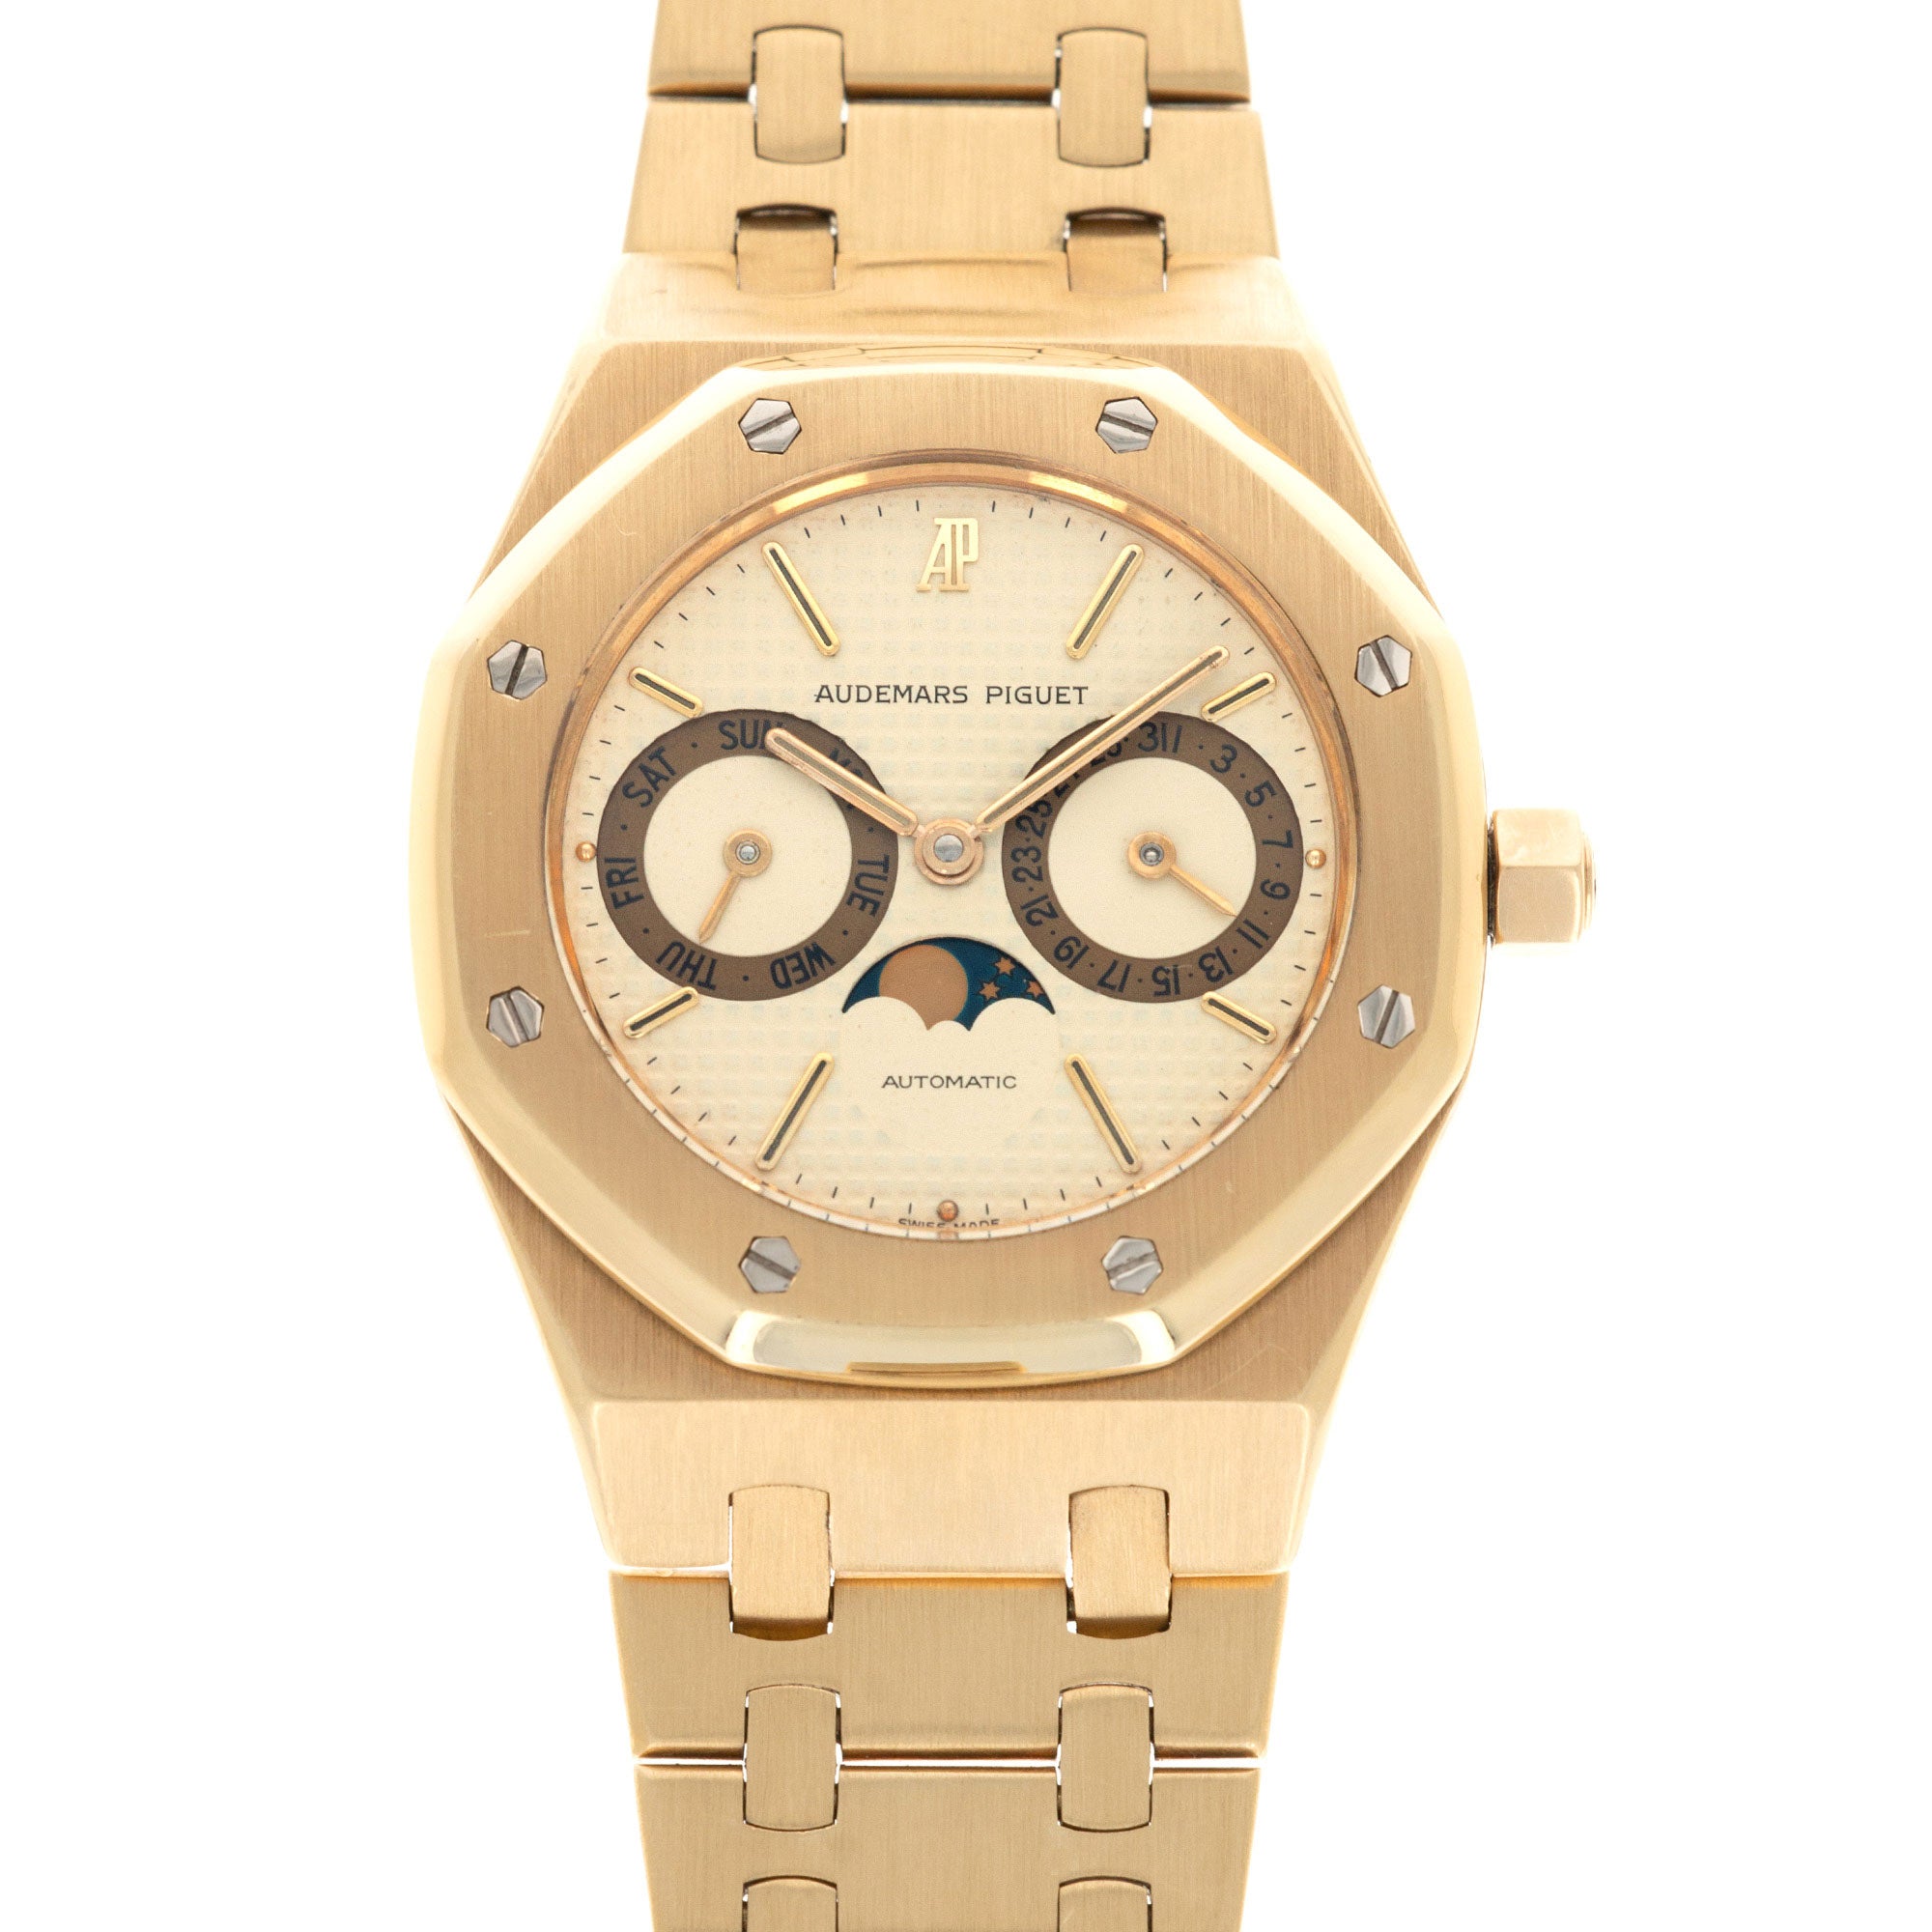 Audemars Piguet - Audemars Piguet Yellow Gold, Day-Date, Moonphase Royal Oak Watch Ref 25594 - The Keystone Watches